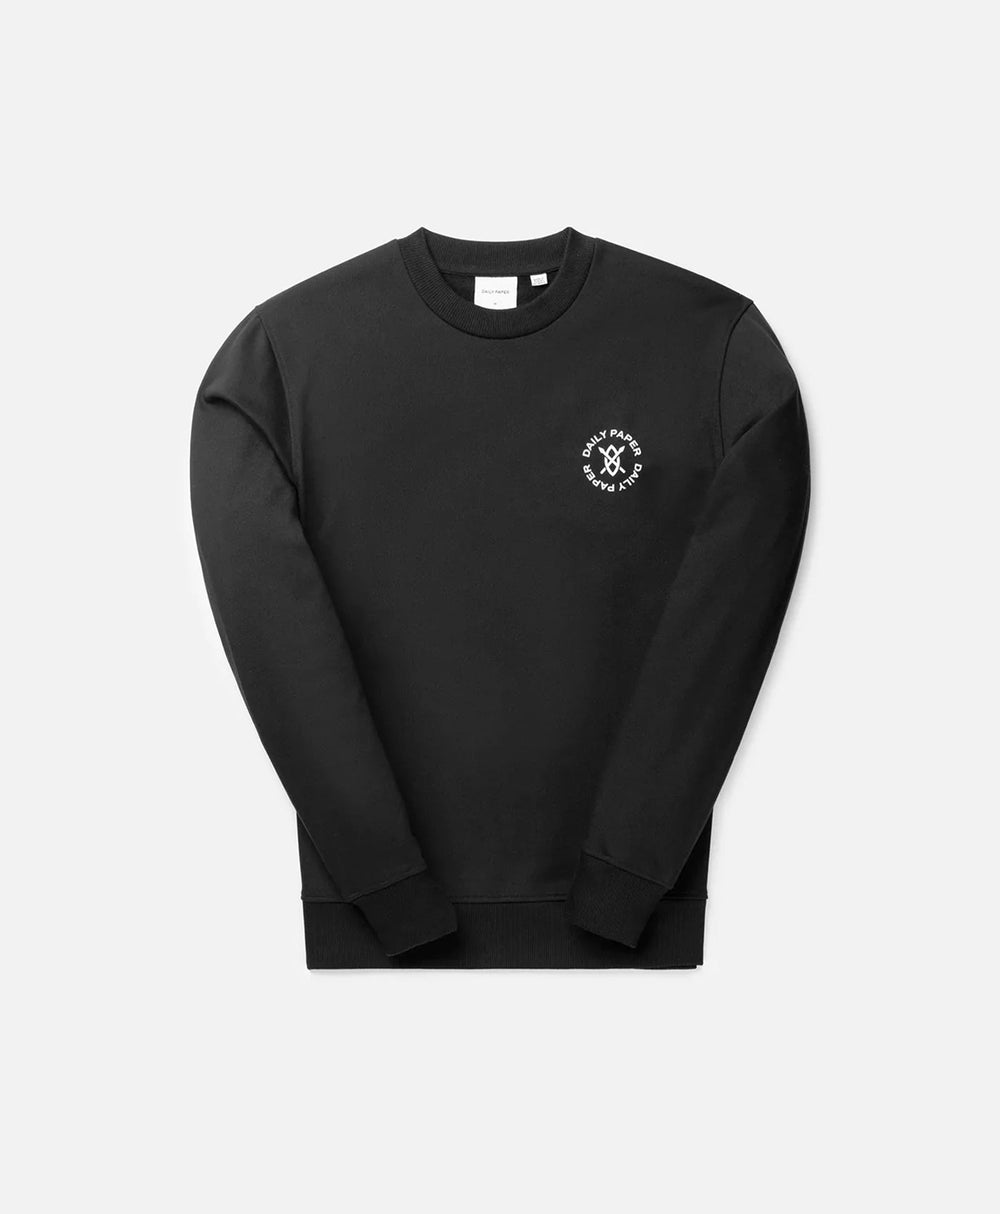 DP - Black Circle Sweater - Packshot - Front